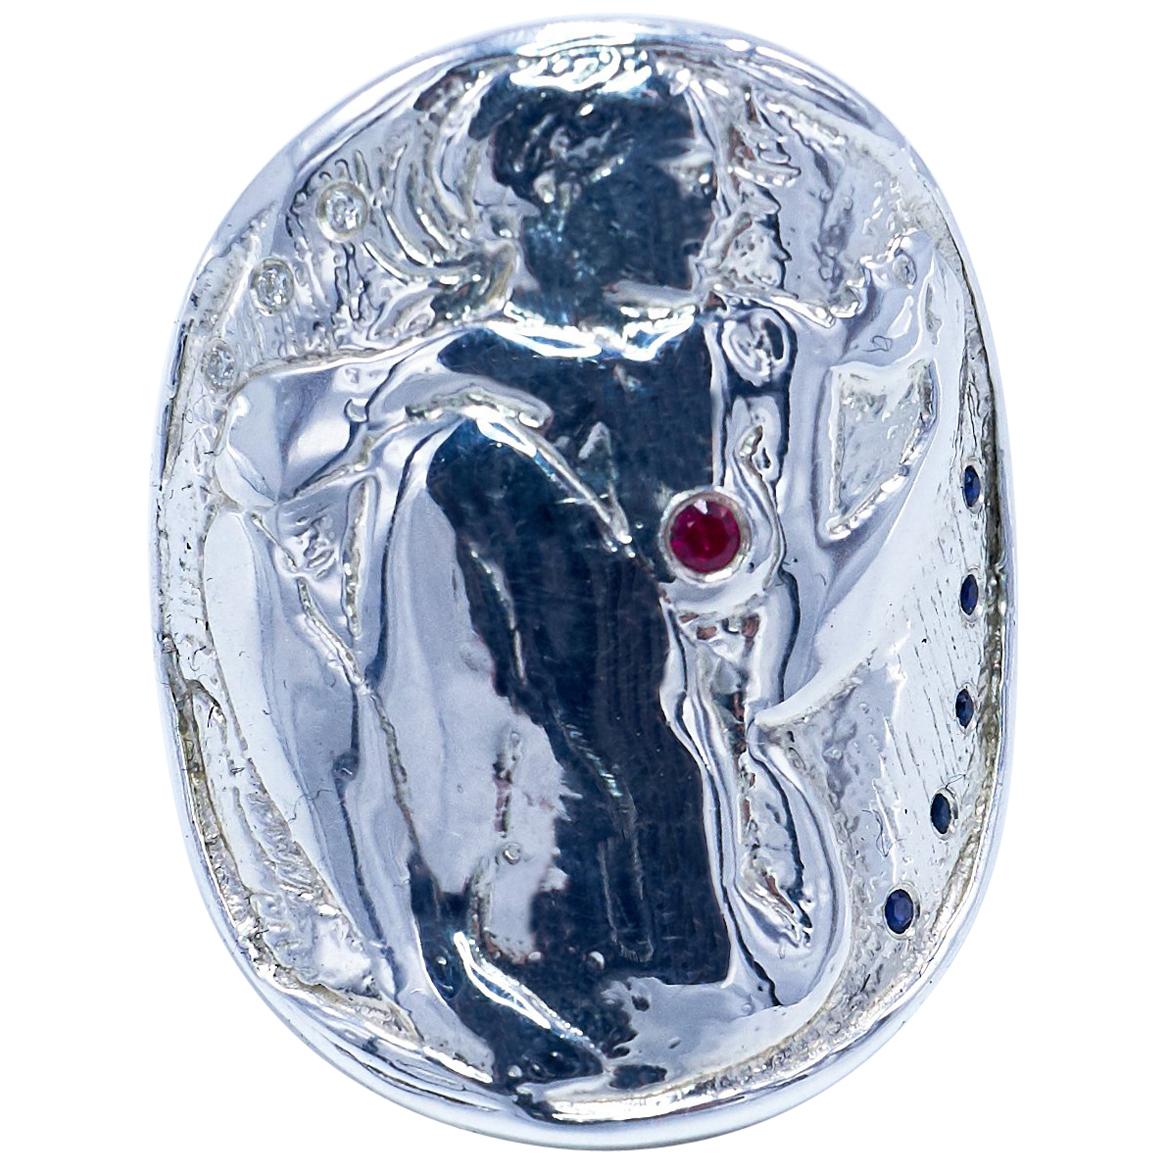 Bague de cocktail Médaille Pièce Argent Femme Diamant Blanc Rubis Saphir BleuJ Dauphin

J DAUPHIN Bague 